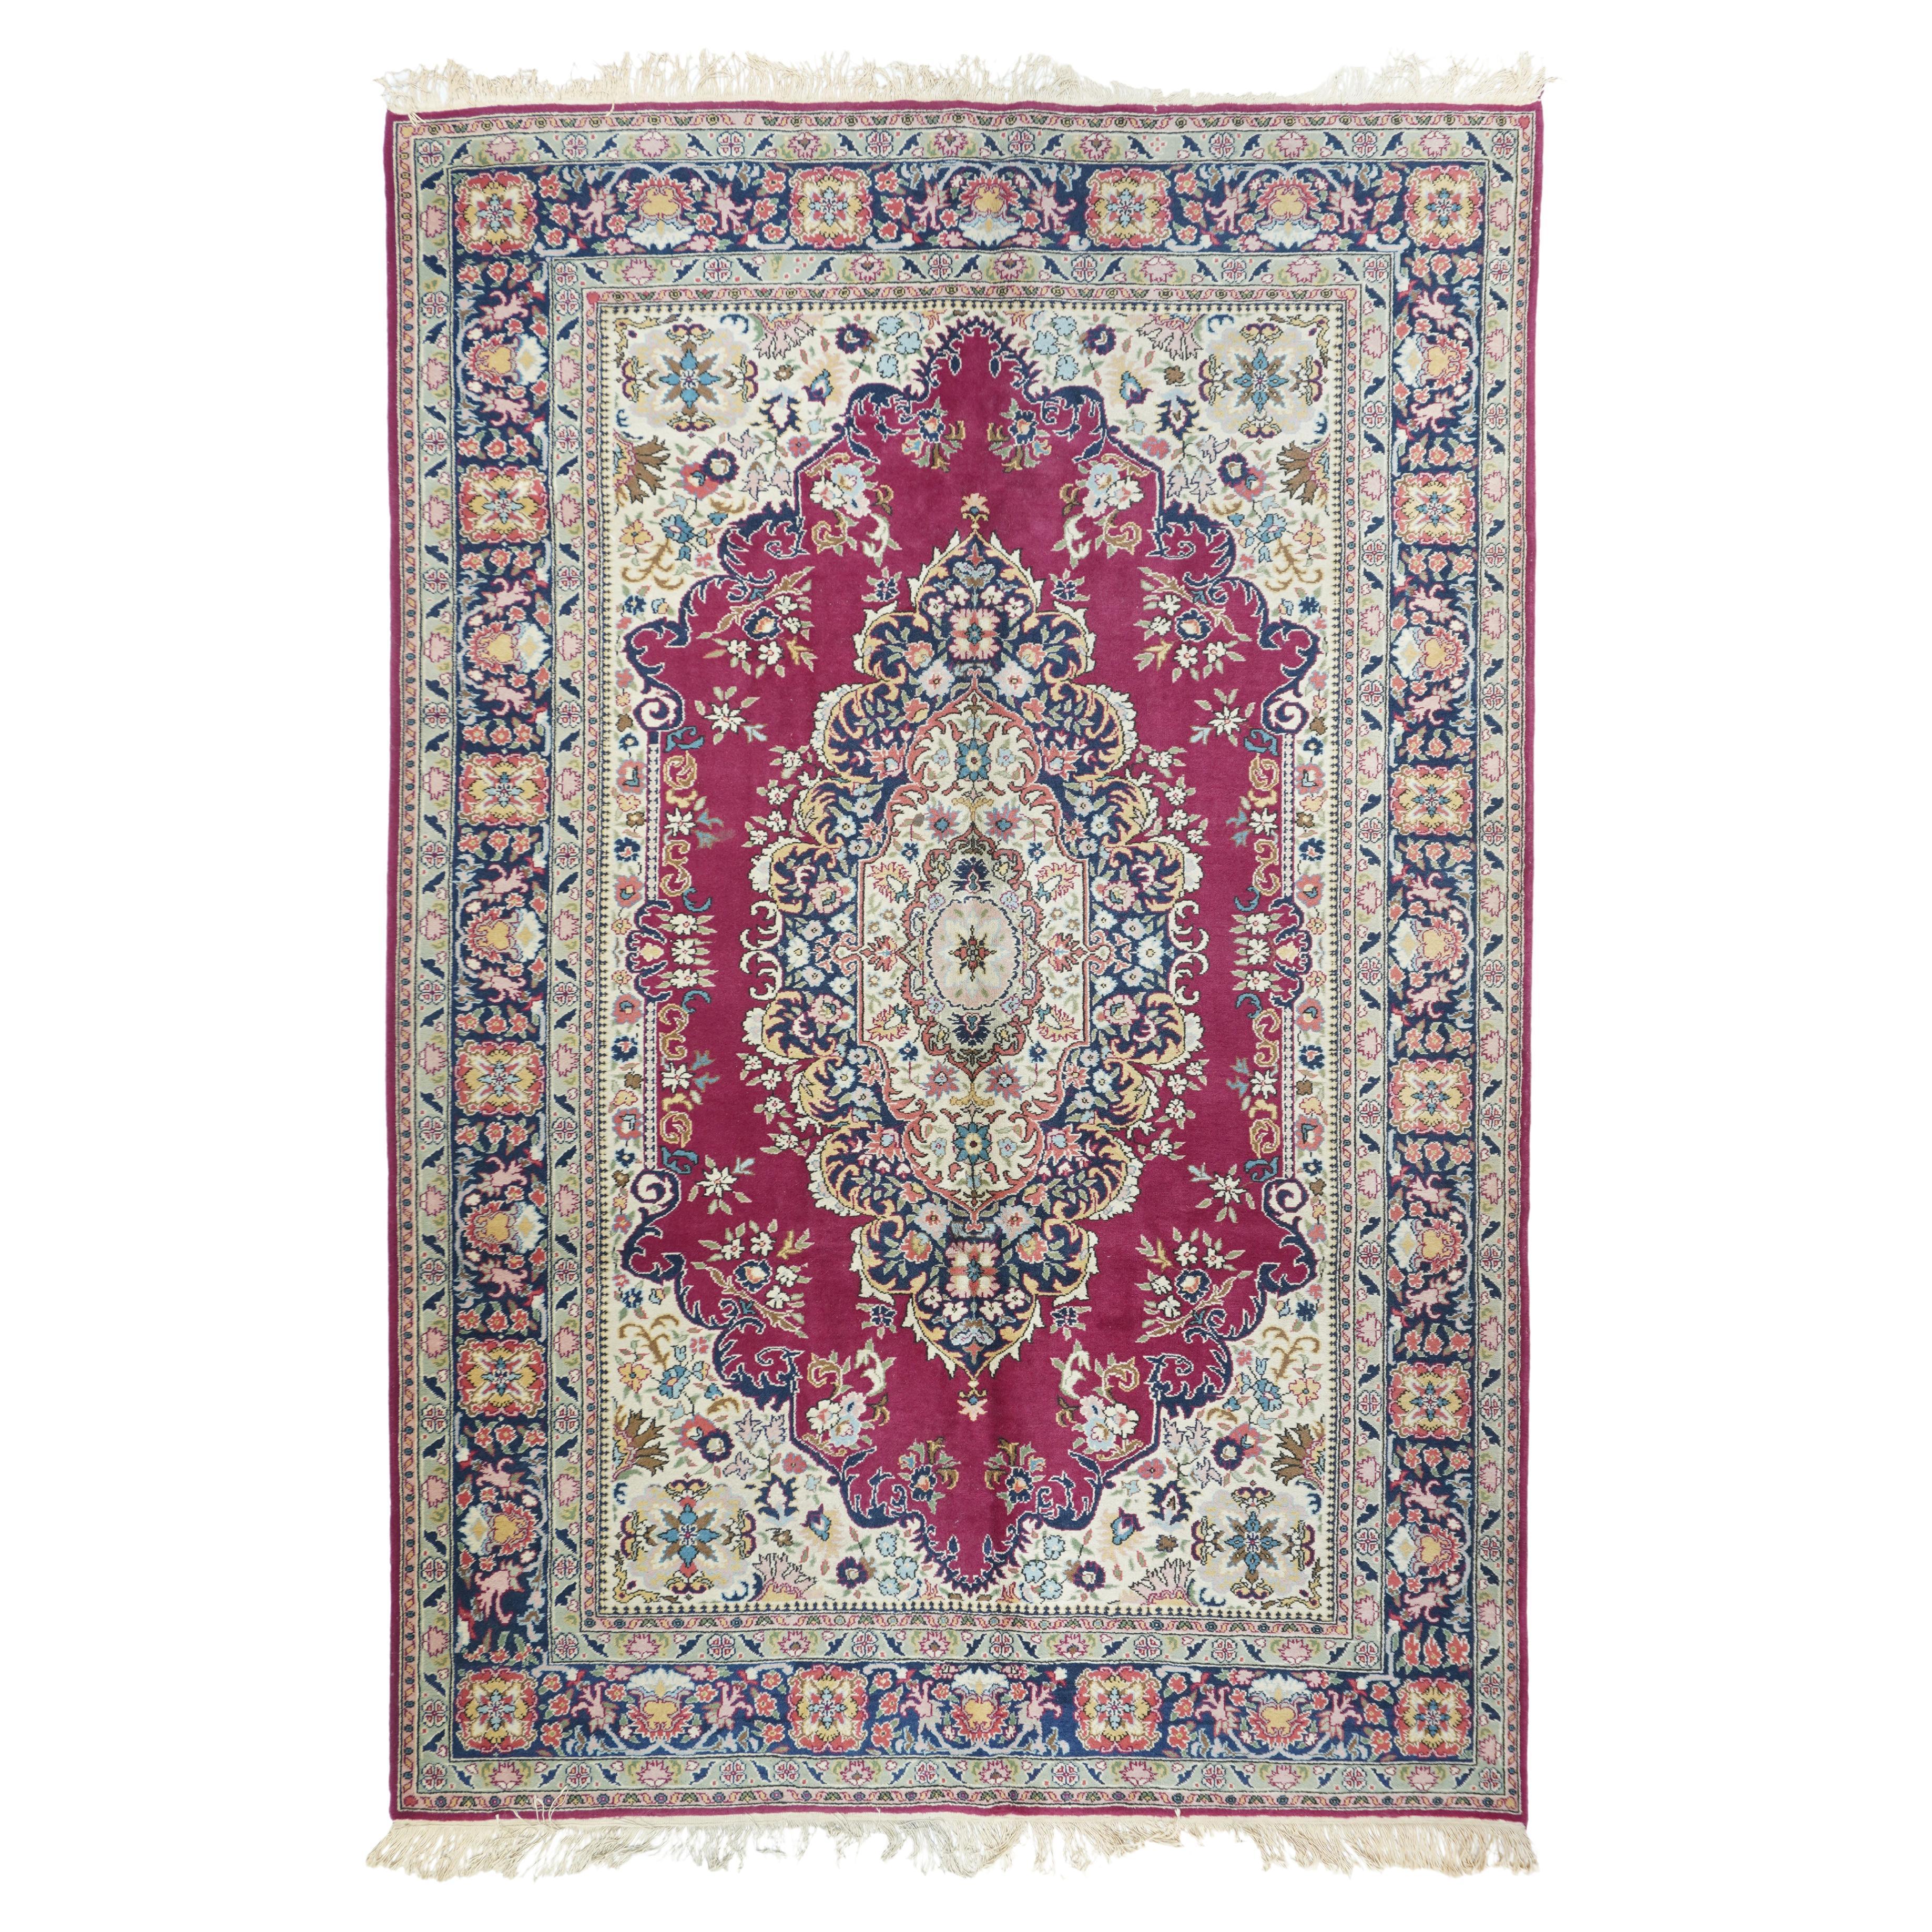 Türkischer Teppich im Vintage-Stil 5'10'' x 9'